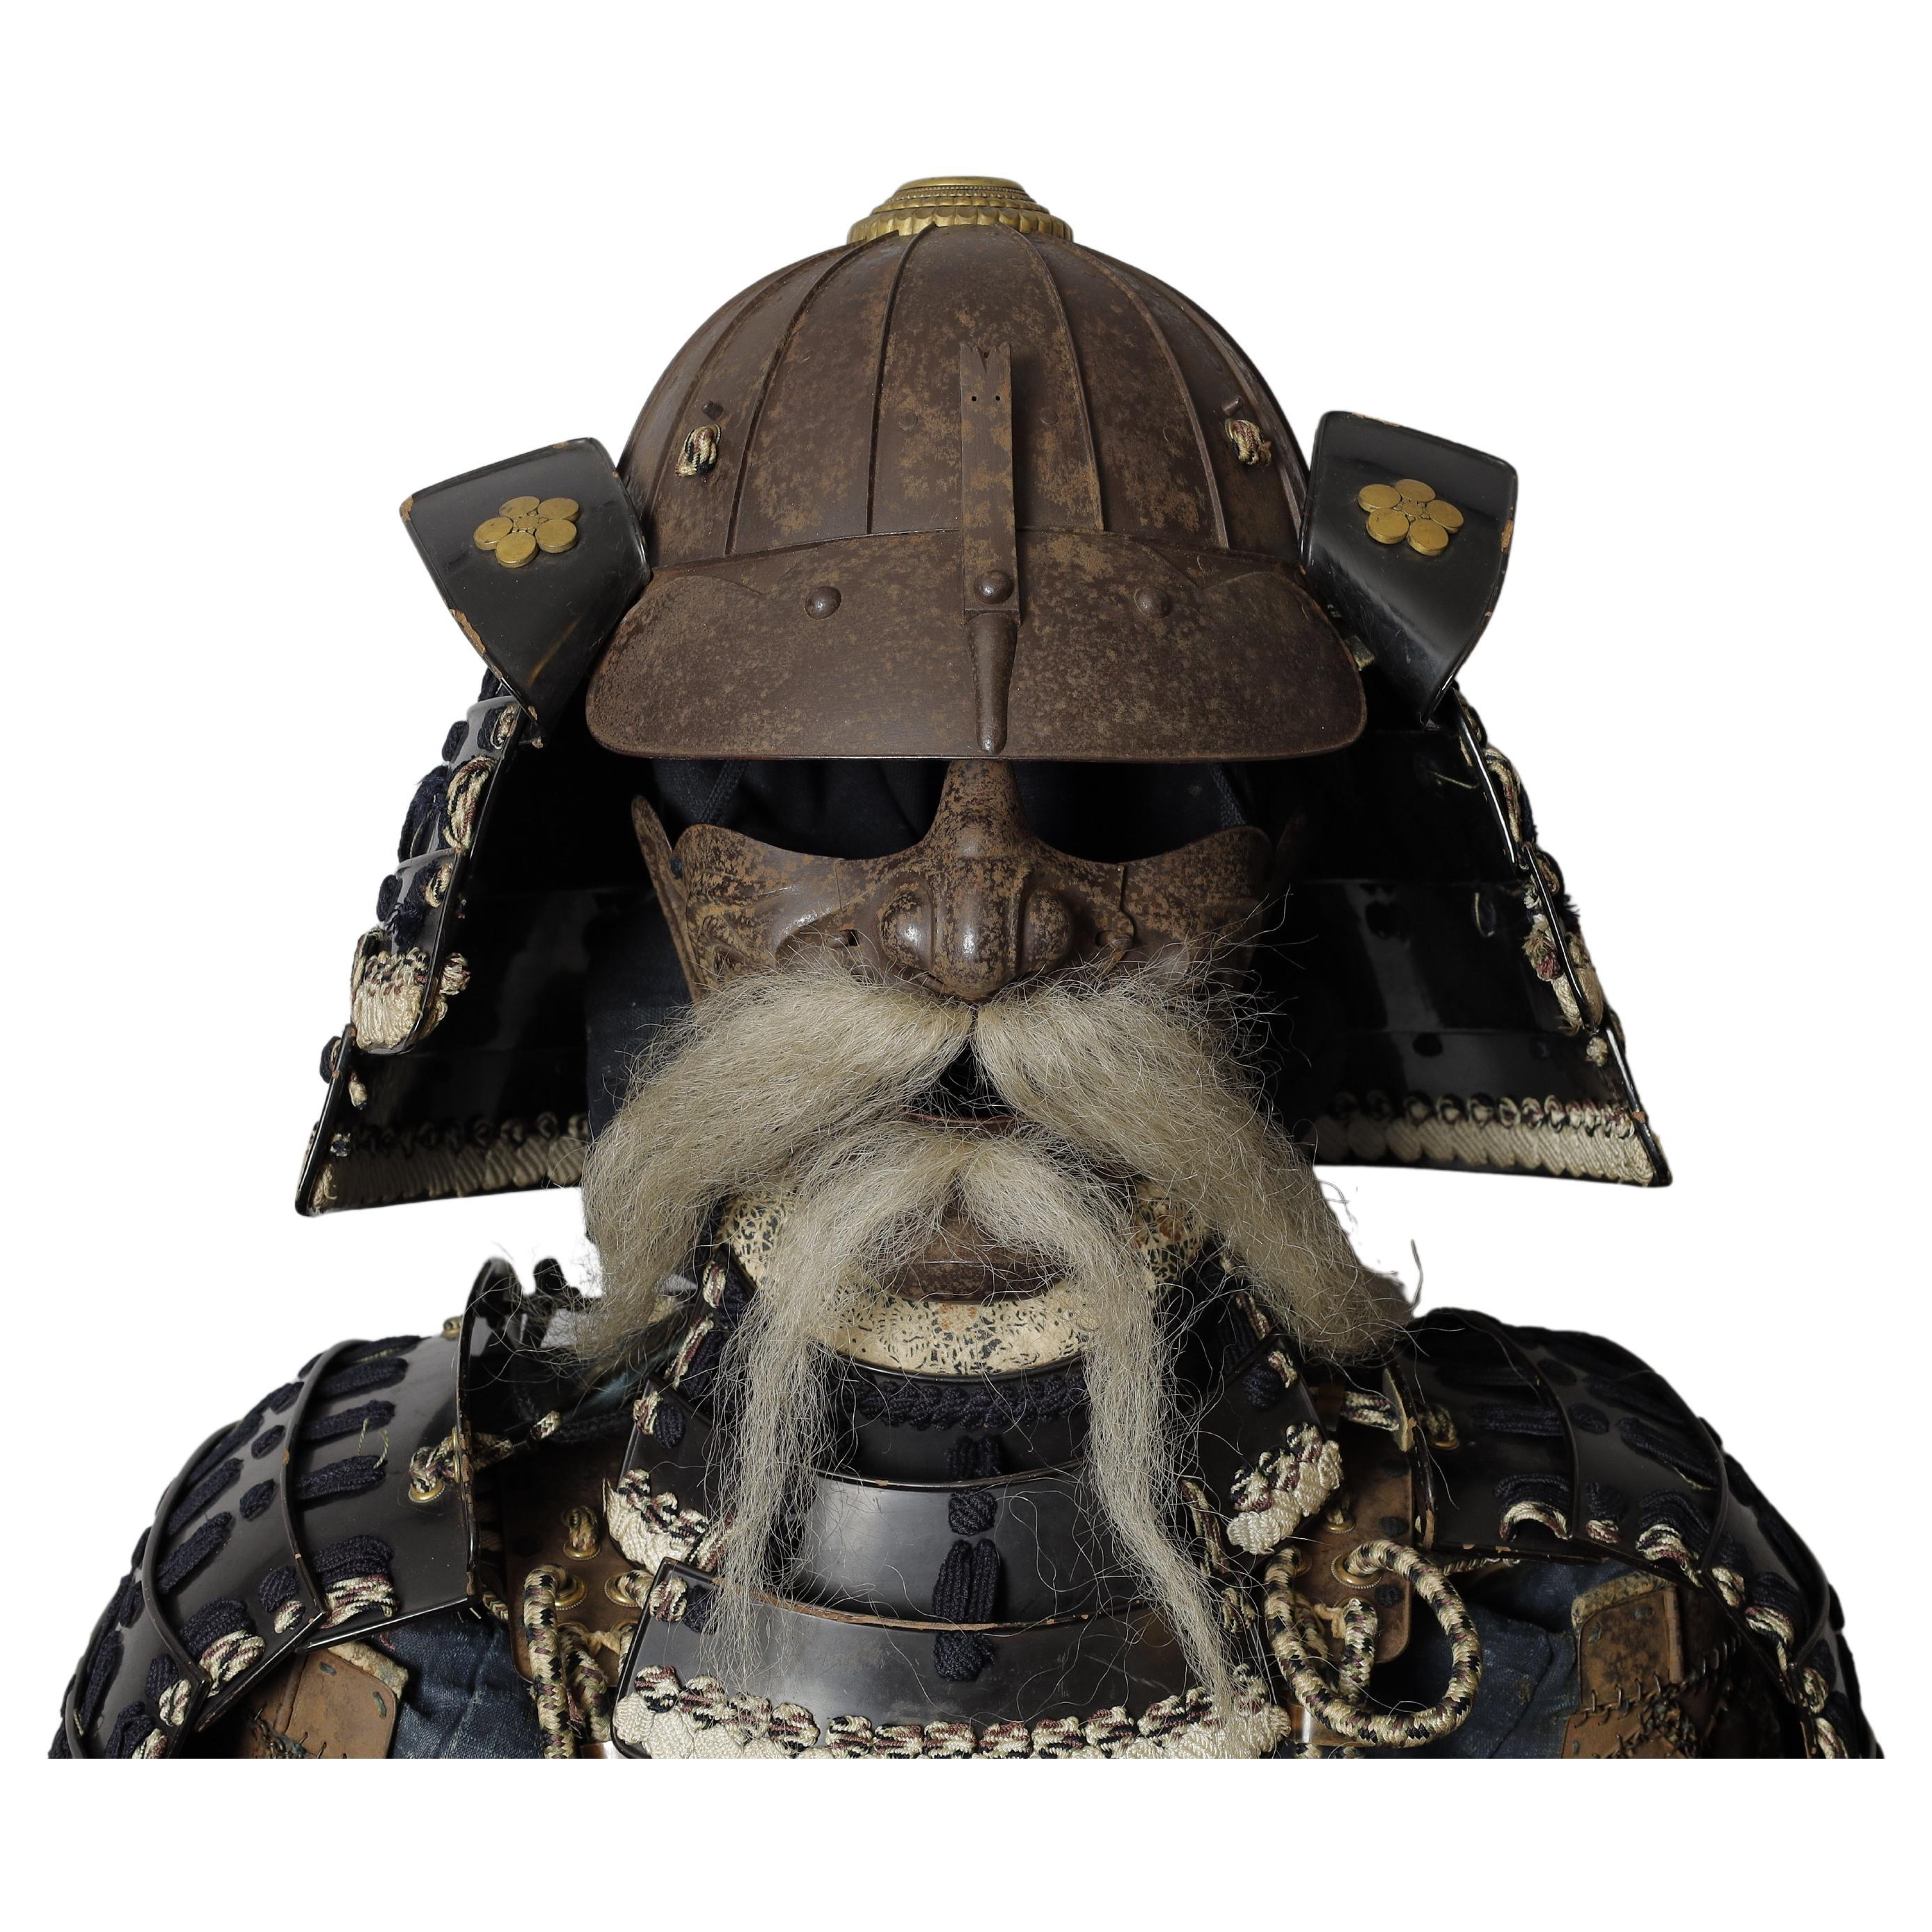 Edo period samurai full set of armor (yoroi) with unique original helmet